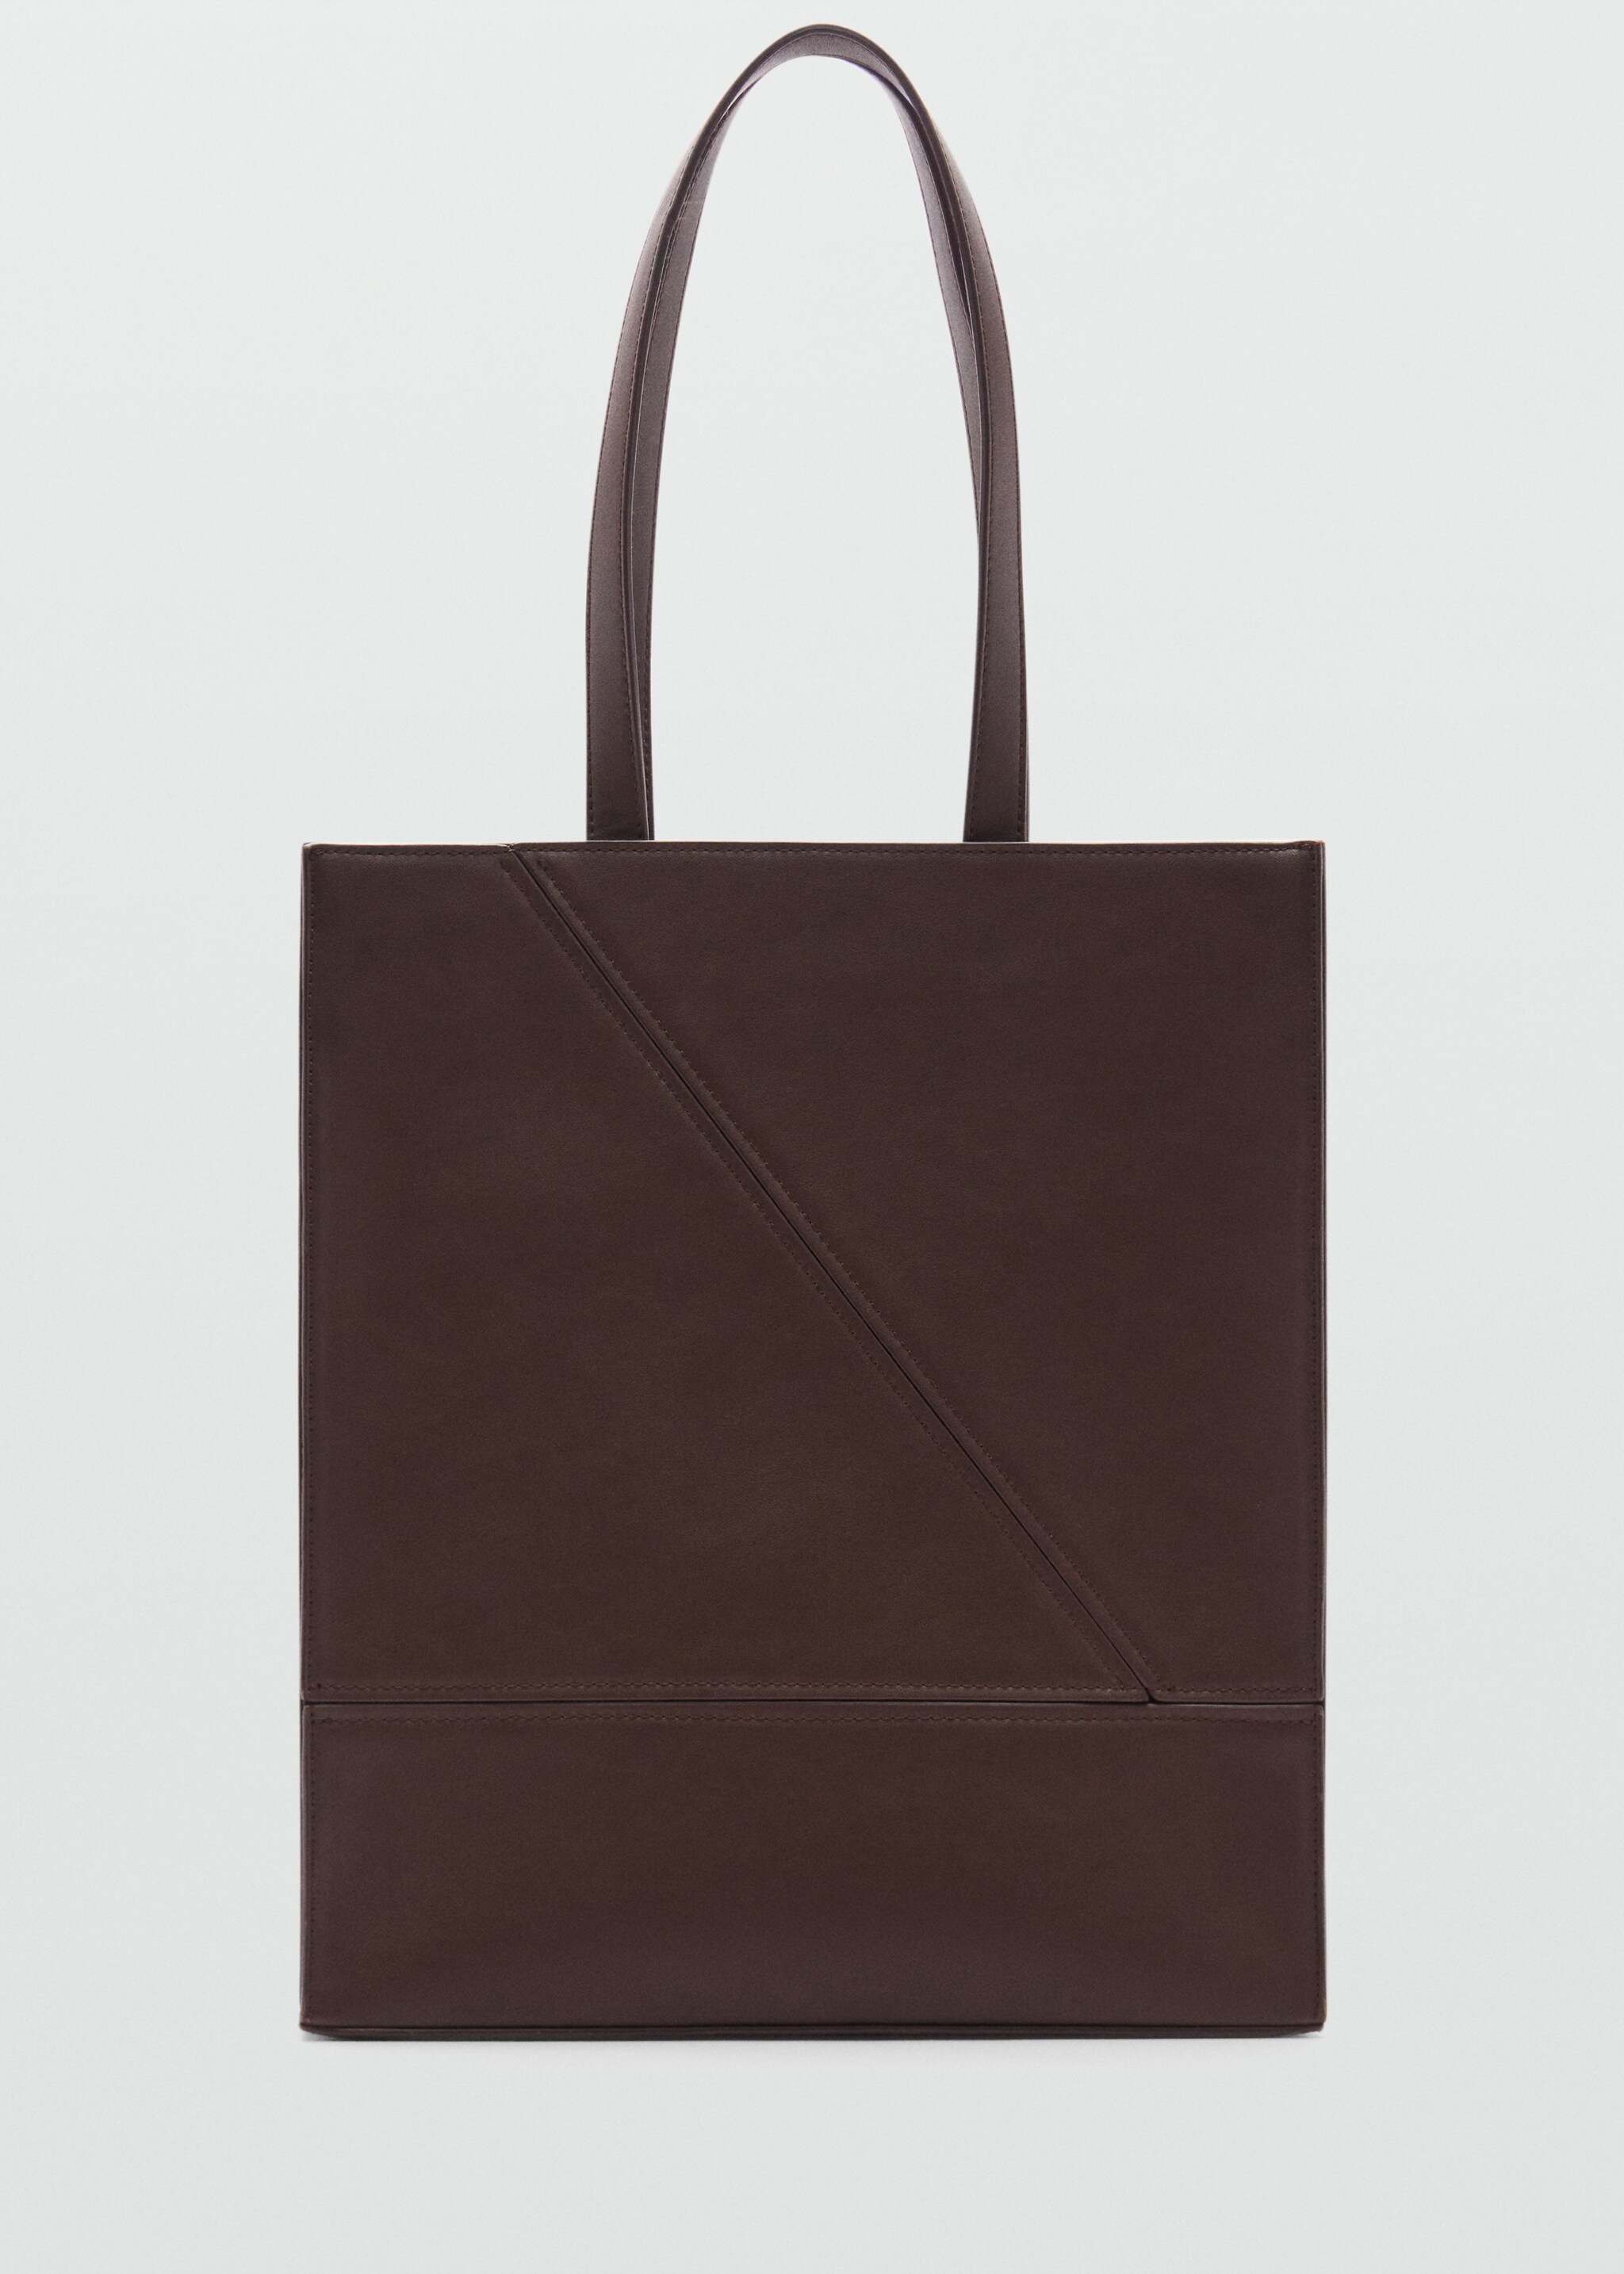 Τσάντα tote δερμάτινη όψη - Προϊόν χωρίς μοντέλο